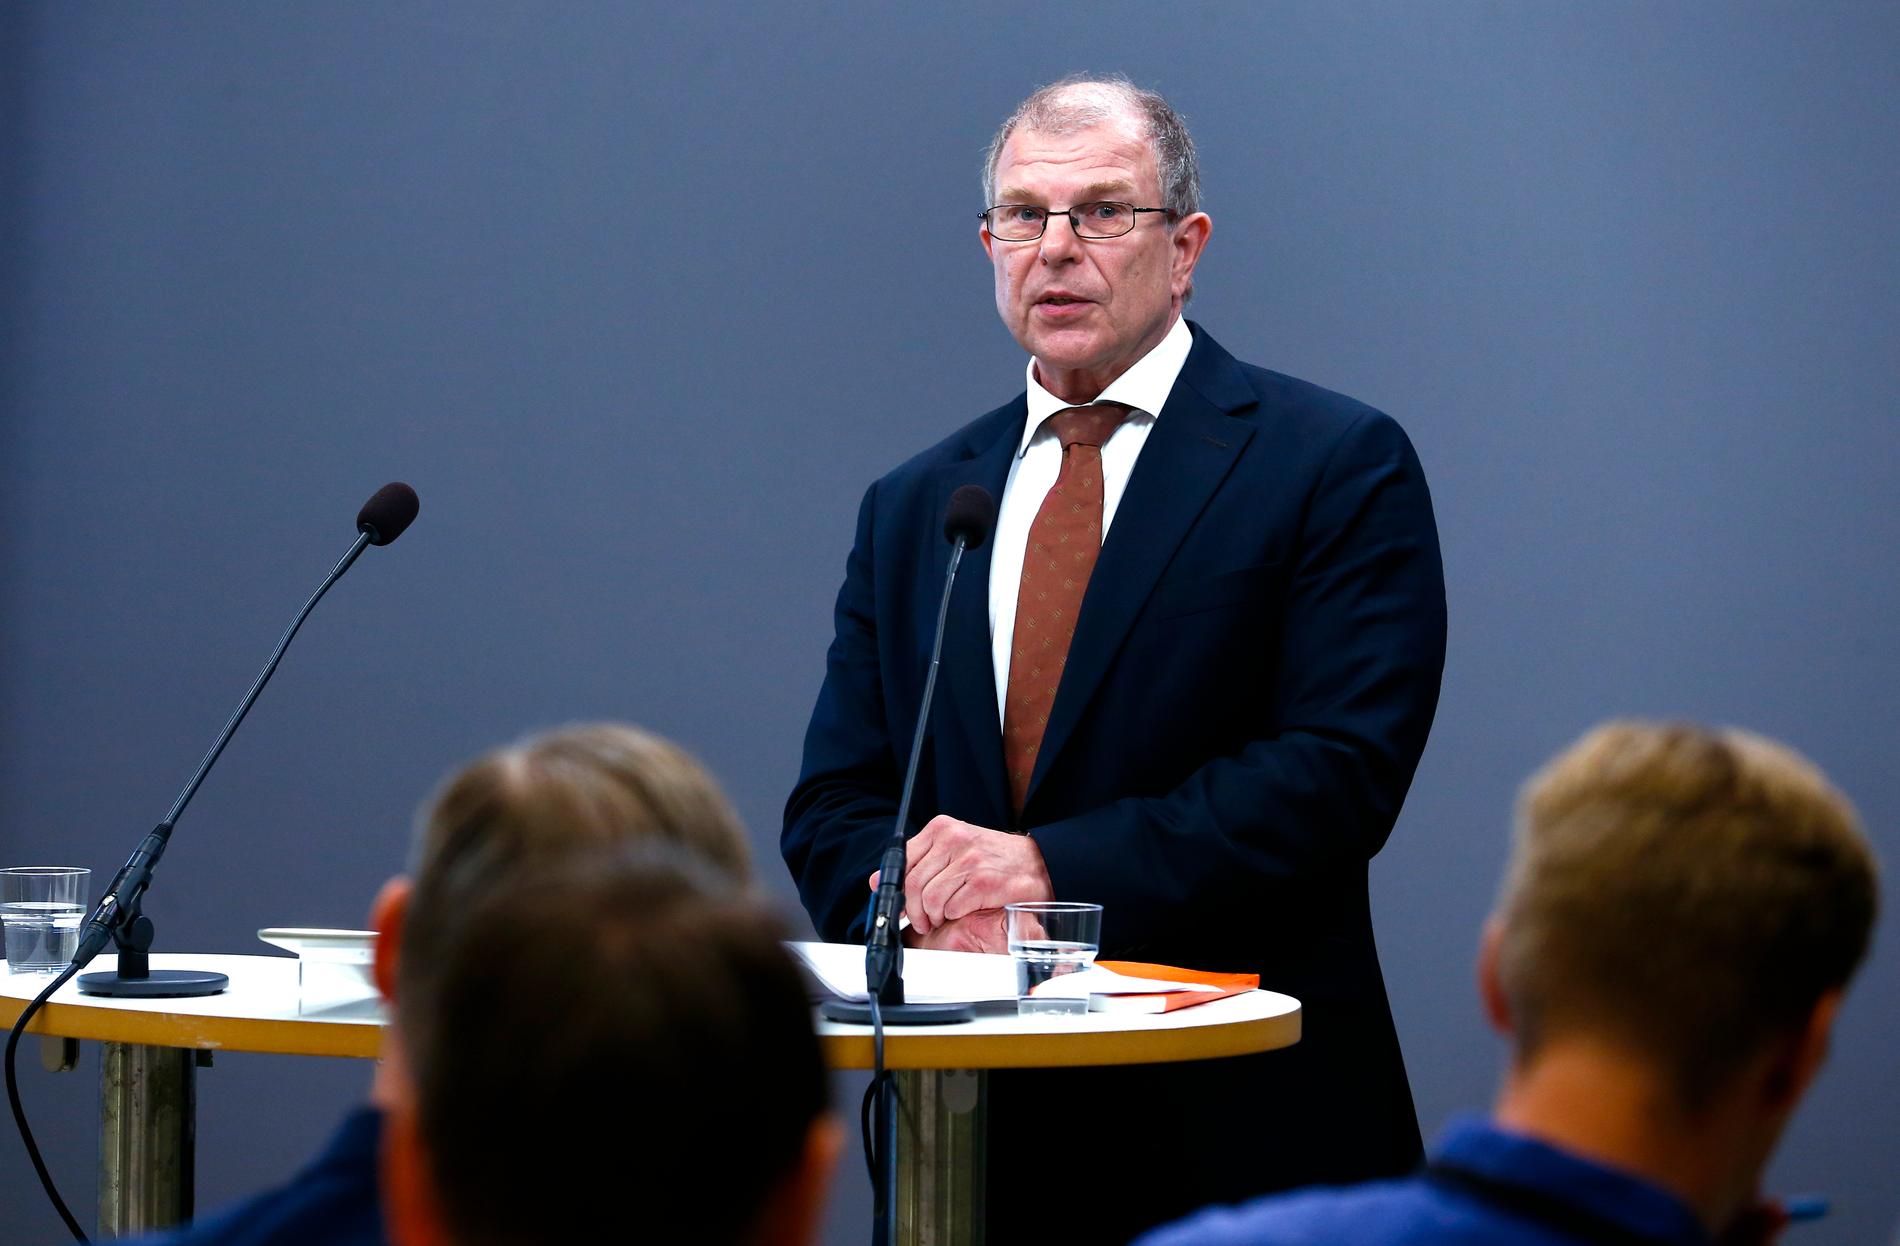 Regeringens vapenutredare Kazimir Åberg presenterar betänkande om ändringar i vapenlagstiftningen.